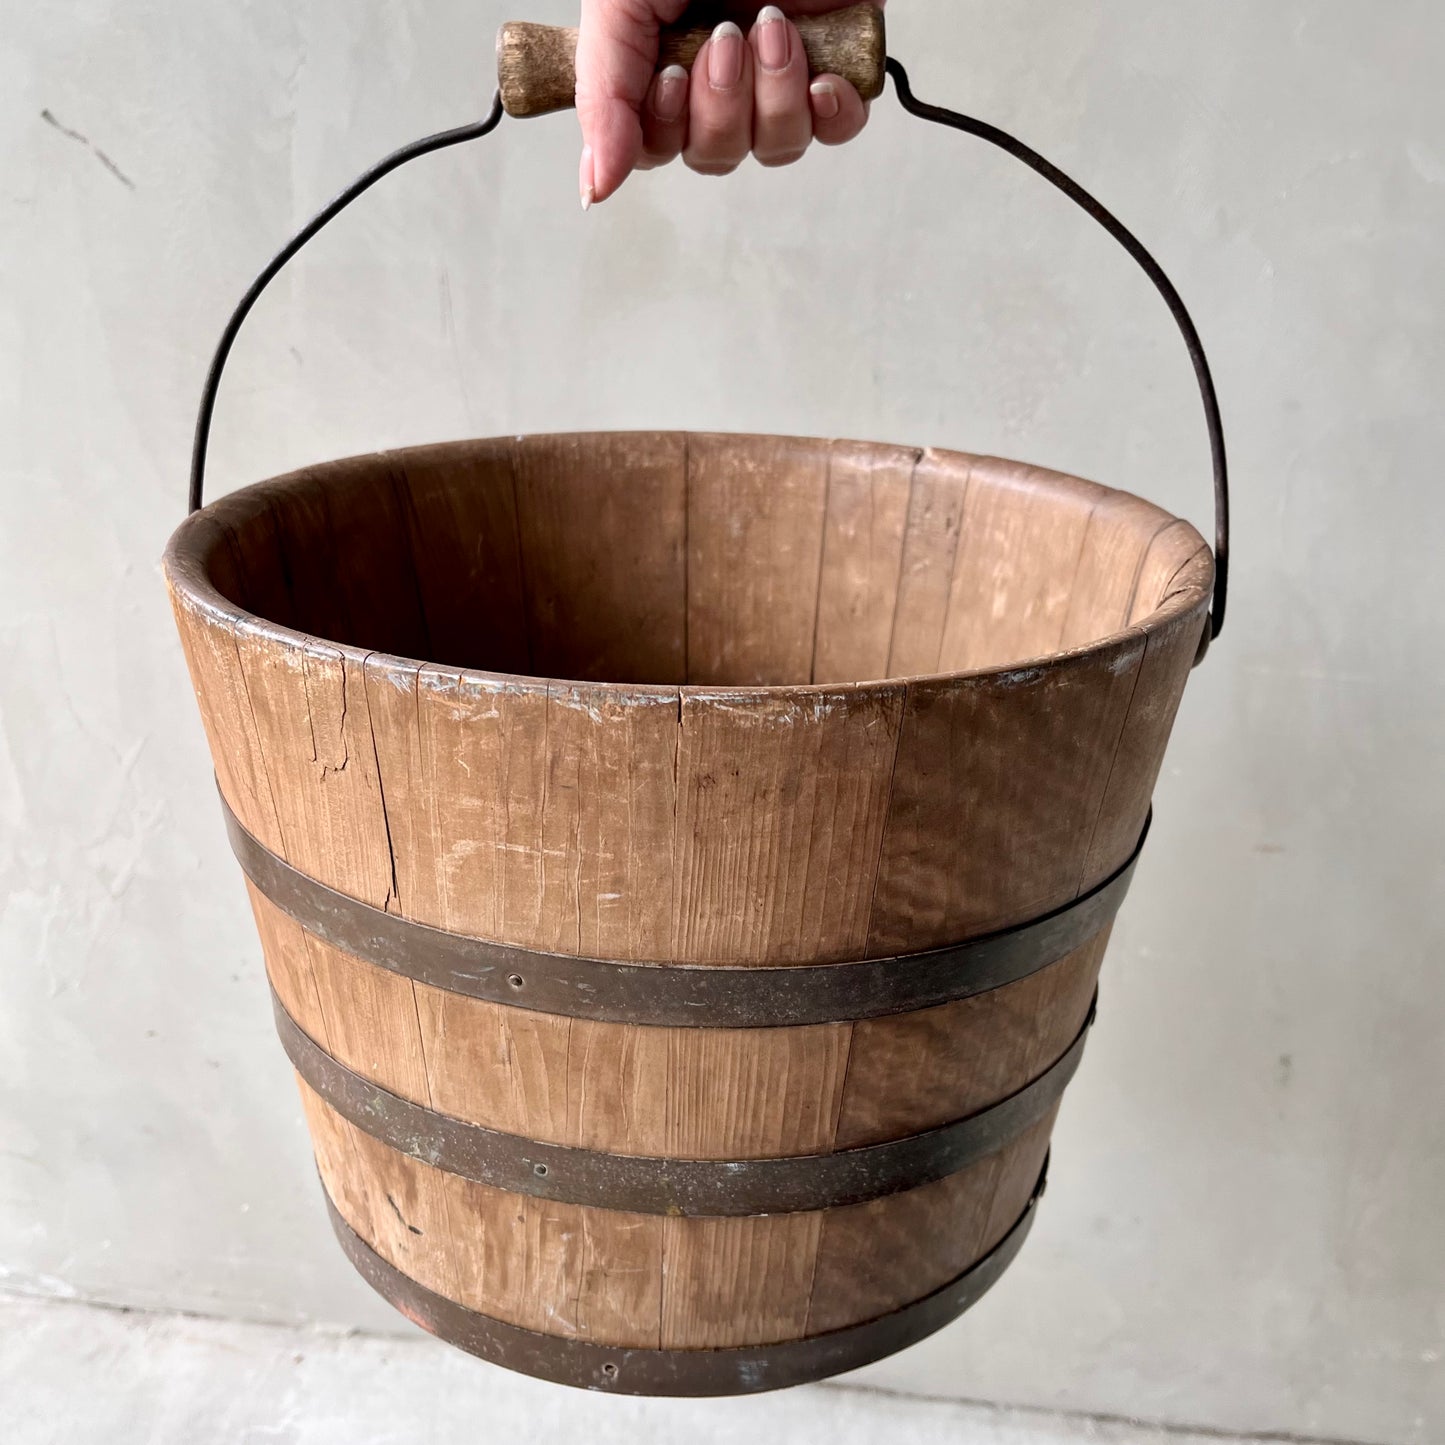 【USA 1950s】Wooden Bucket